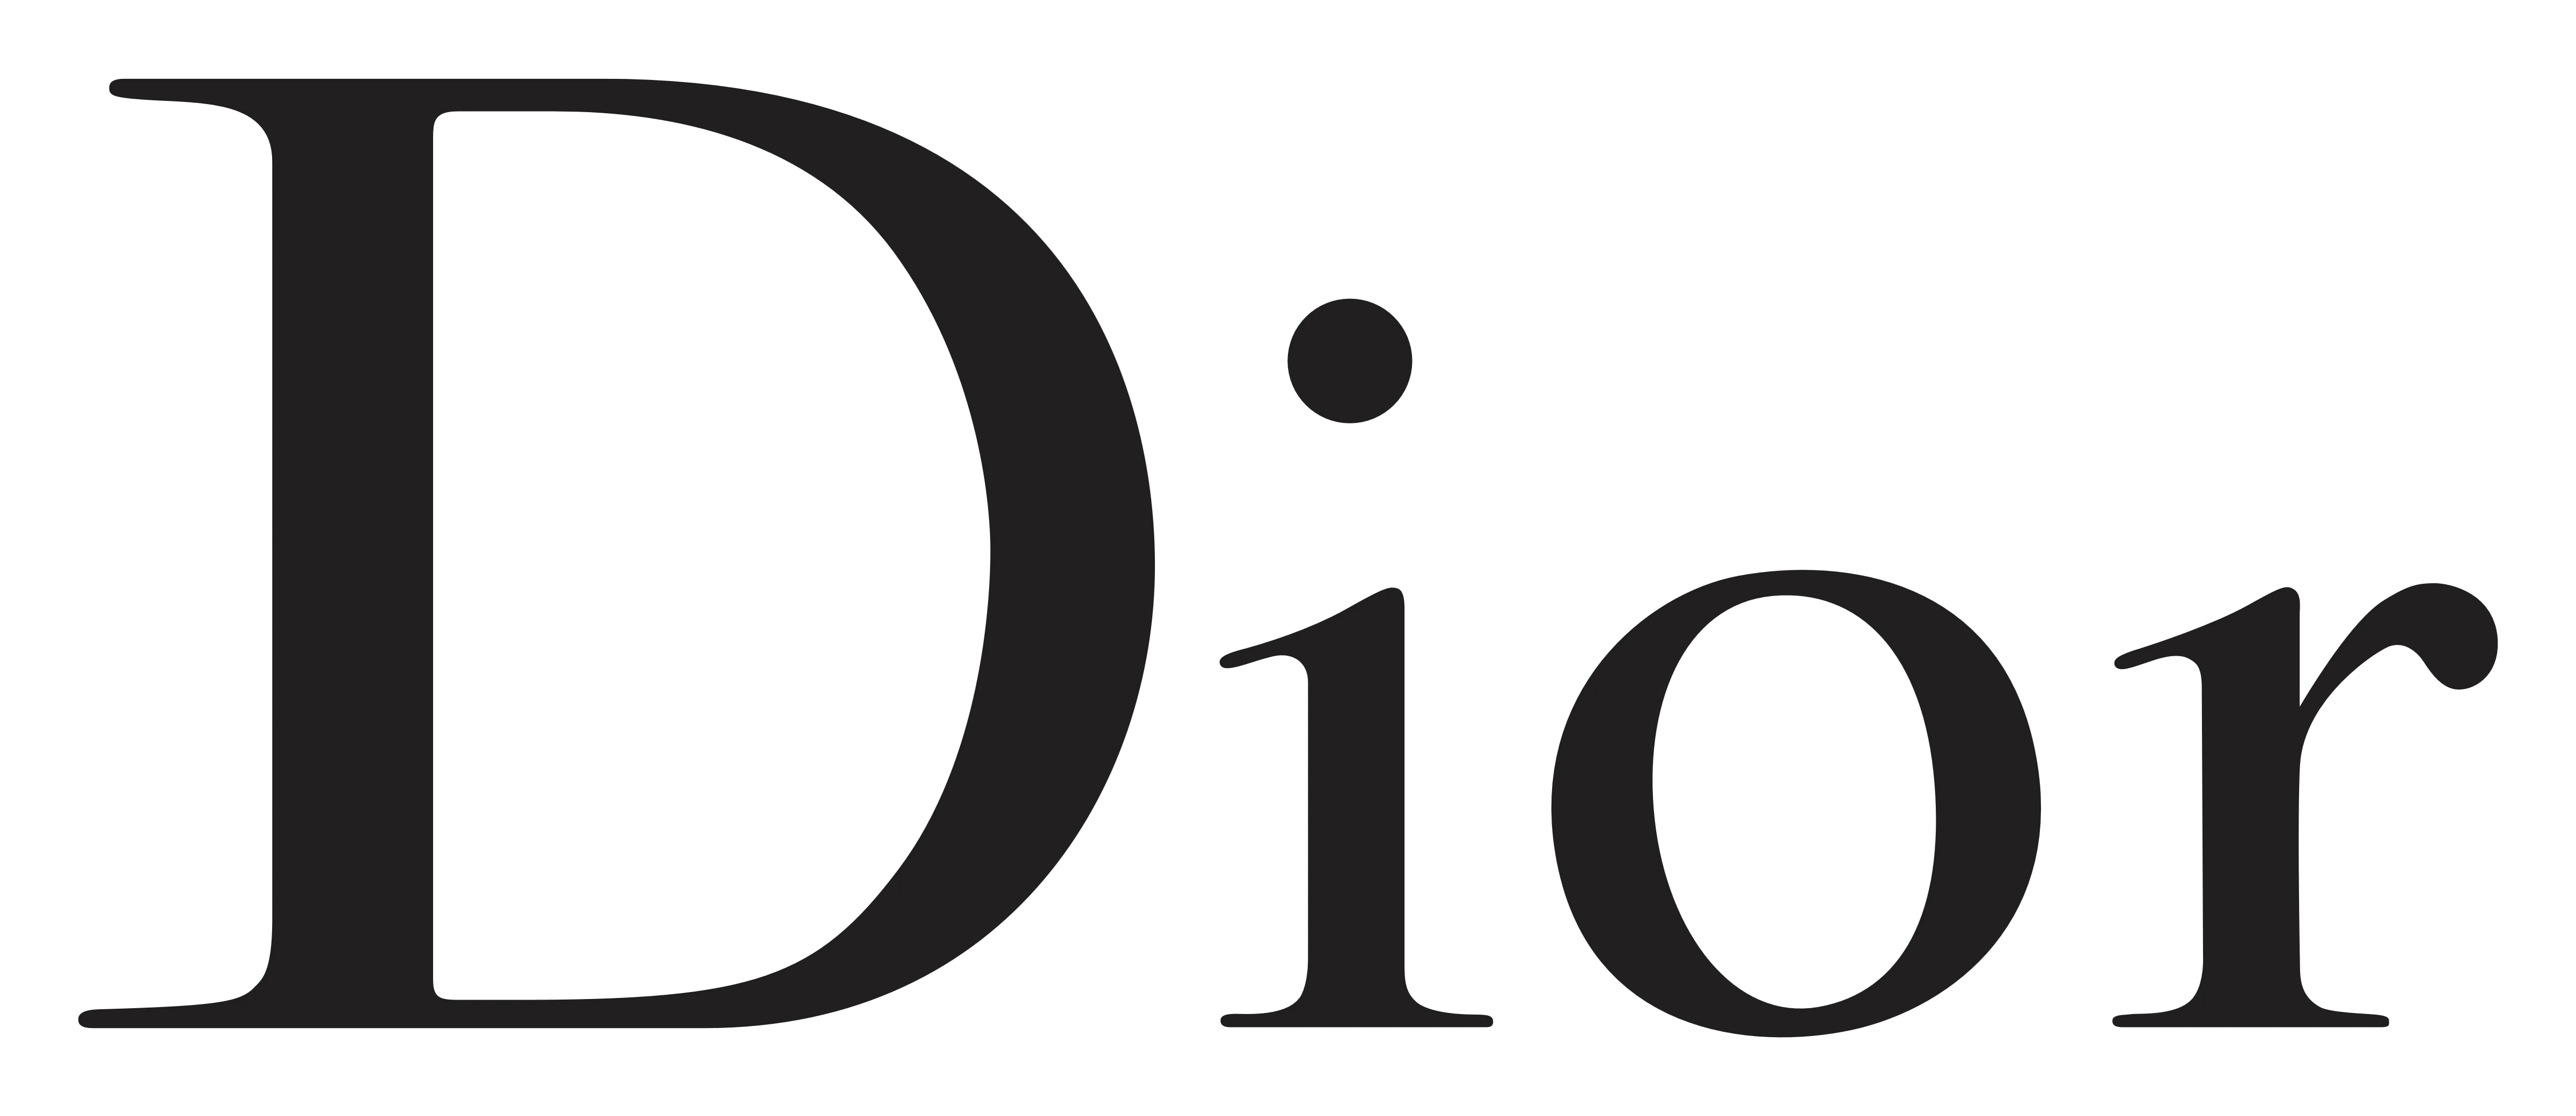 دیور Dior